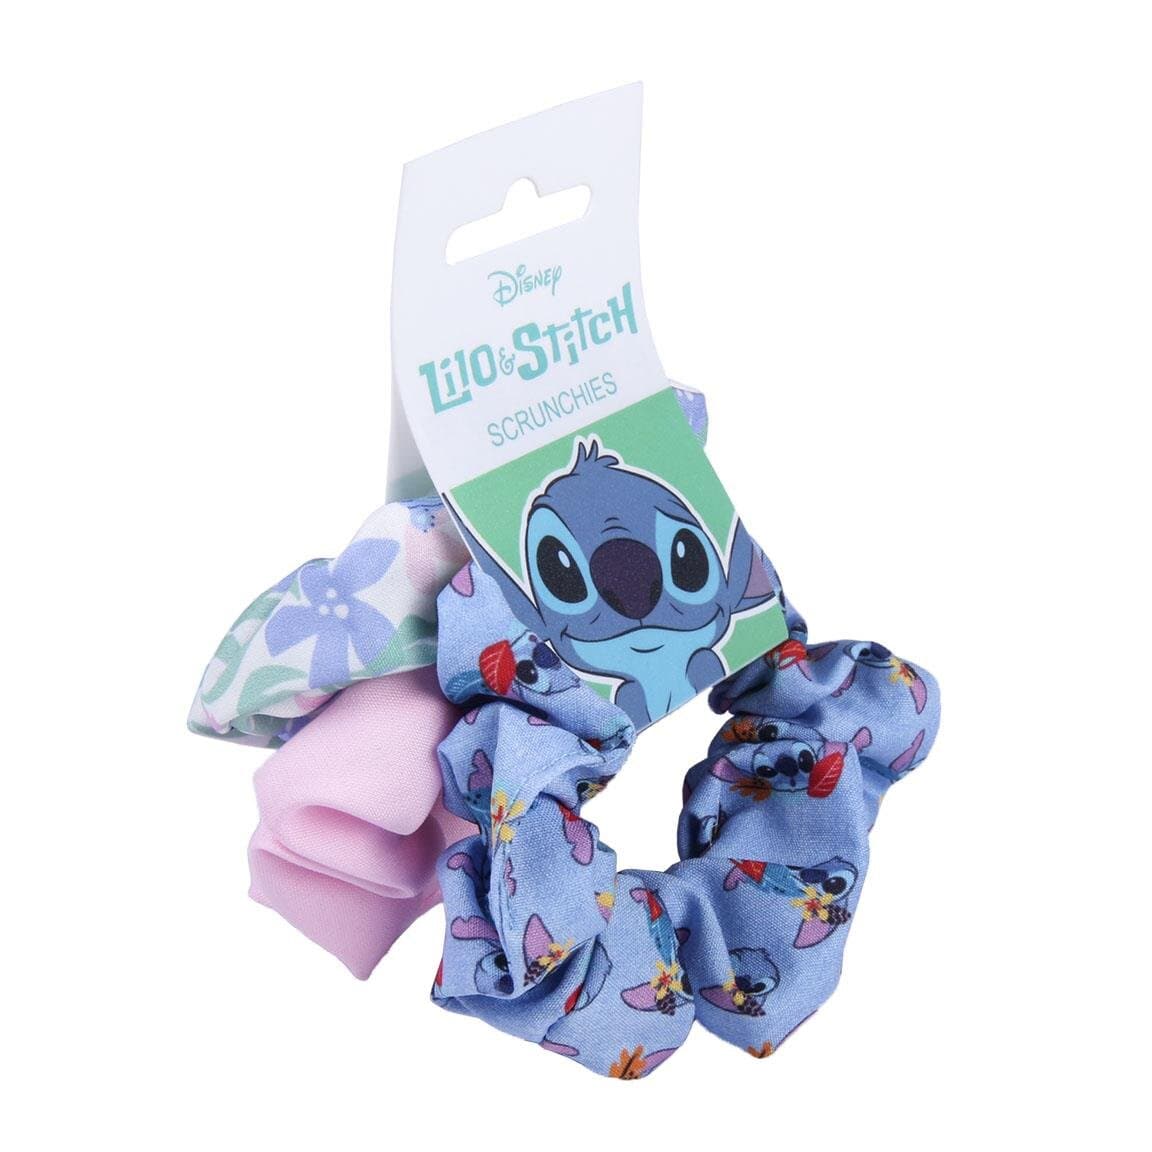 Lilo & Stitch - Scrunchies 3-pack